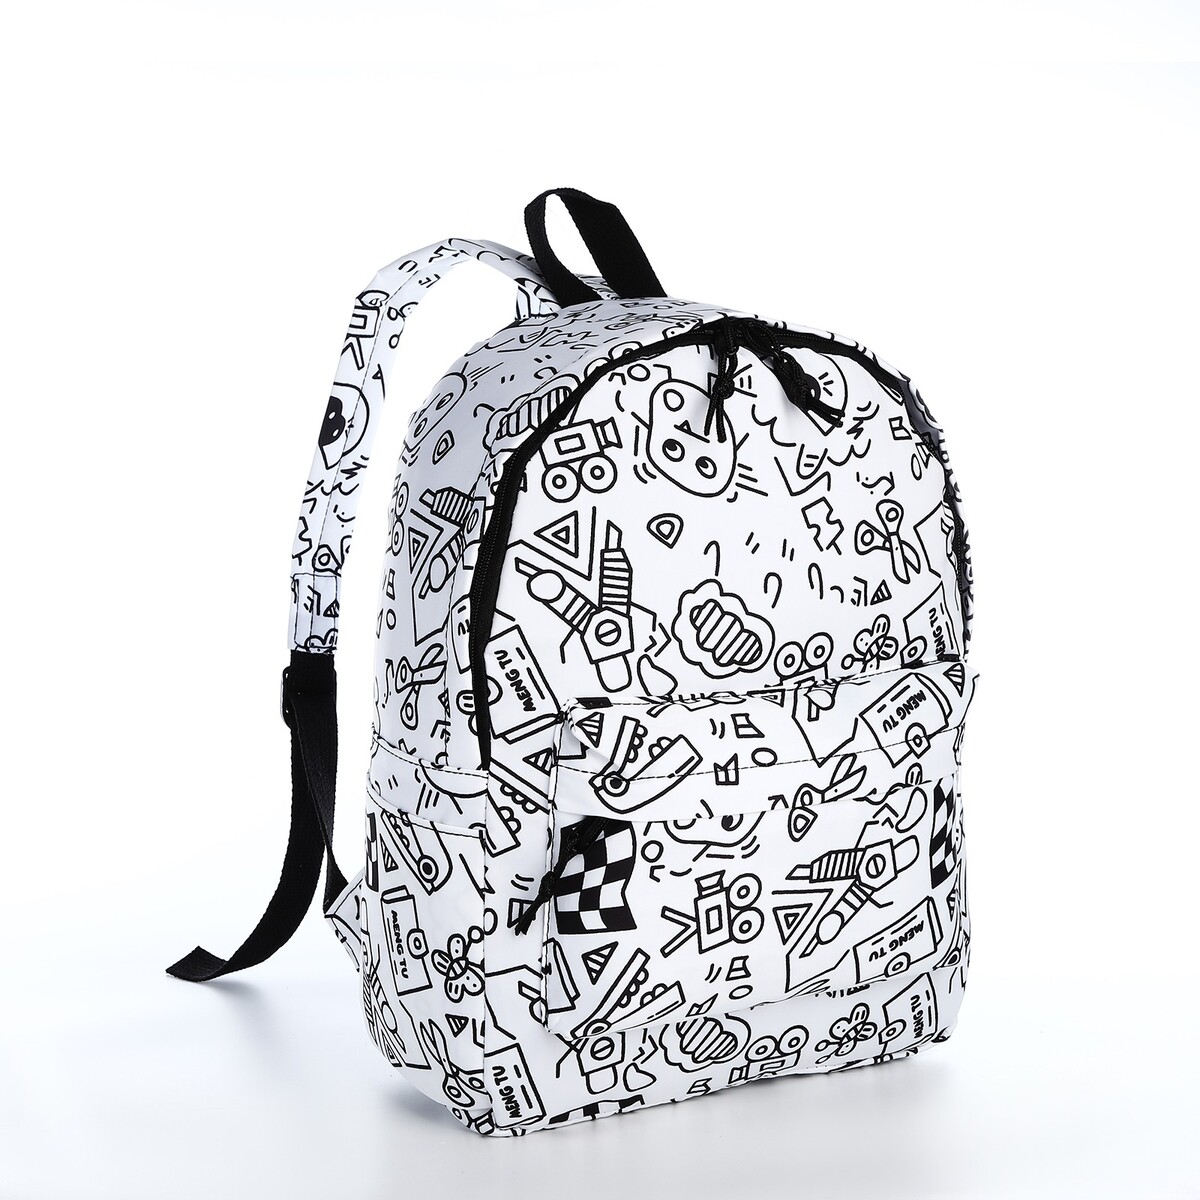 Рюкзак школьный из текстиля на молнии, 3 кармана, цвет белый/черный